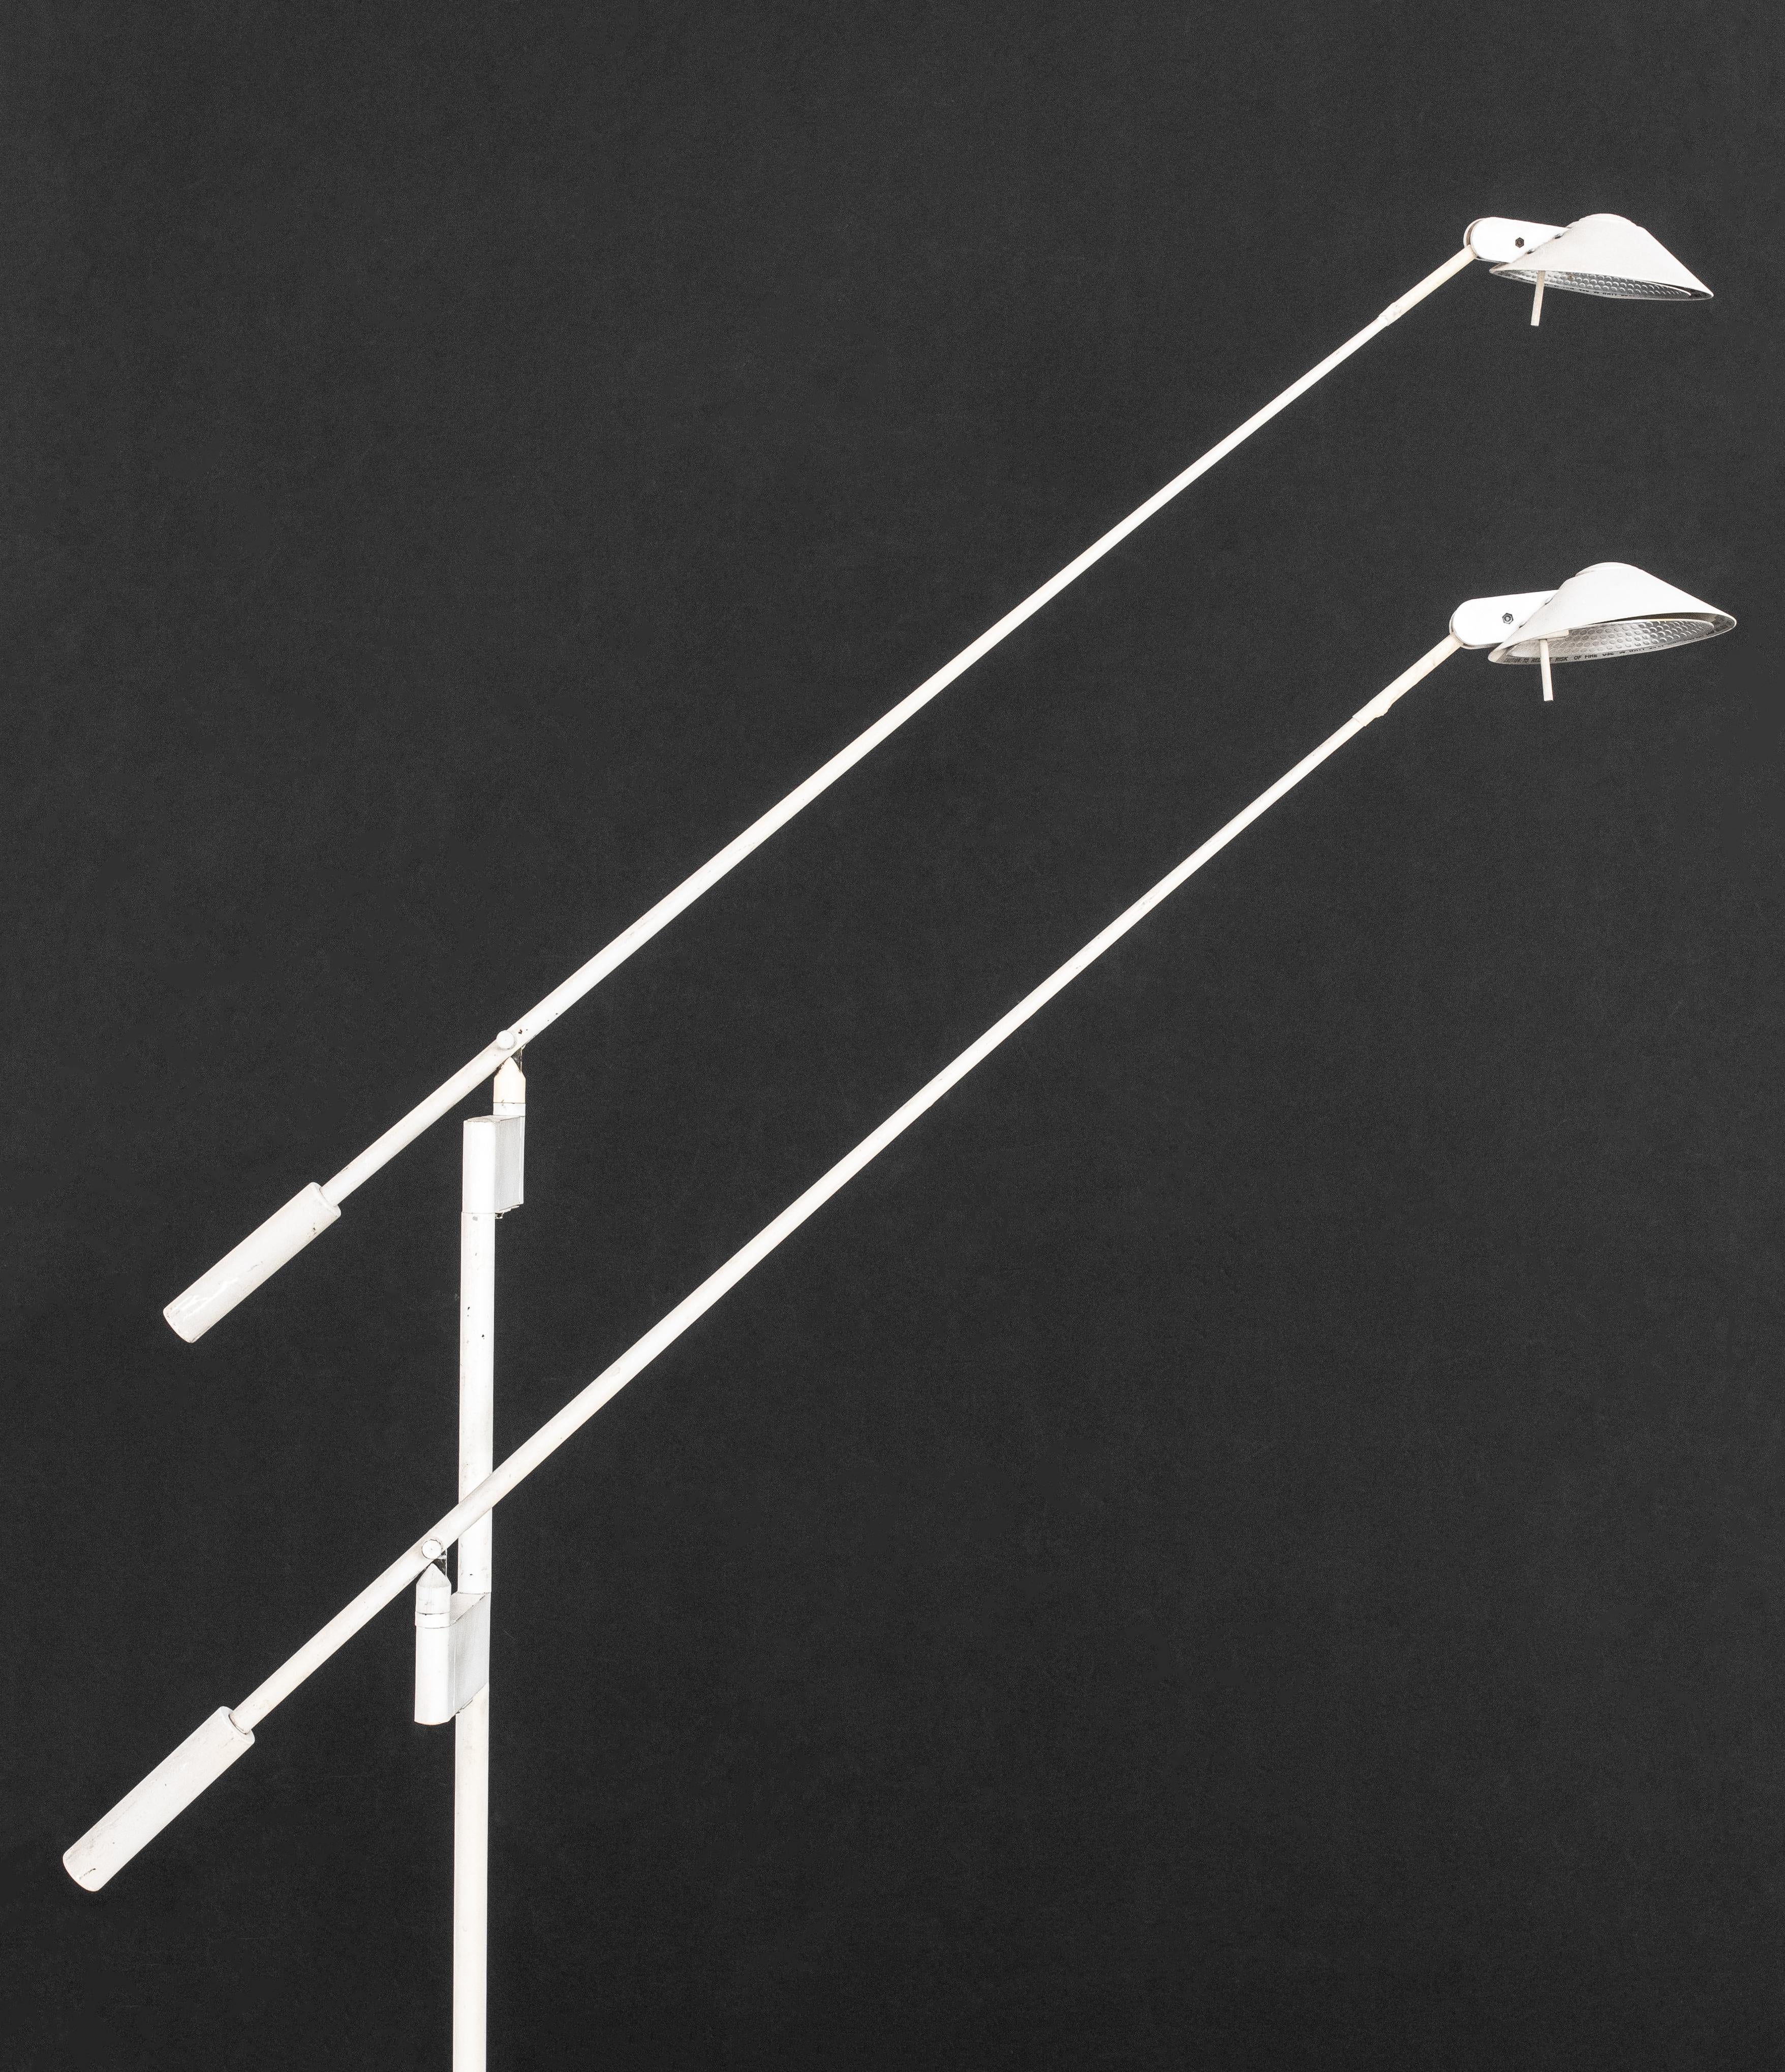 Robert Sonneman (American, b. 1943) for George Kovacs Floor Lamp, 1988, white-painted steel, marked. 54